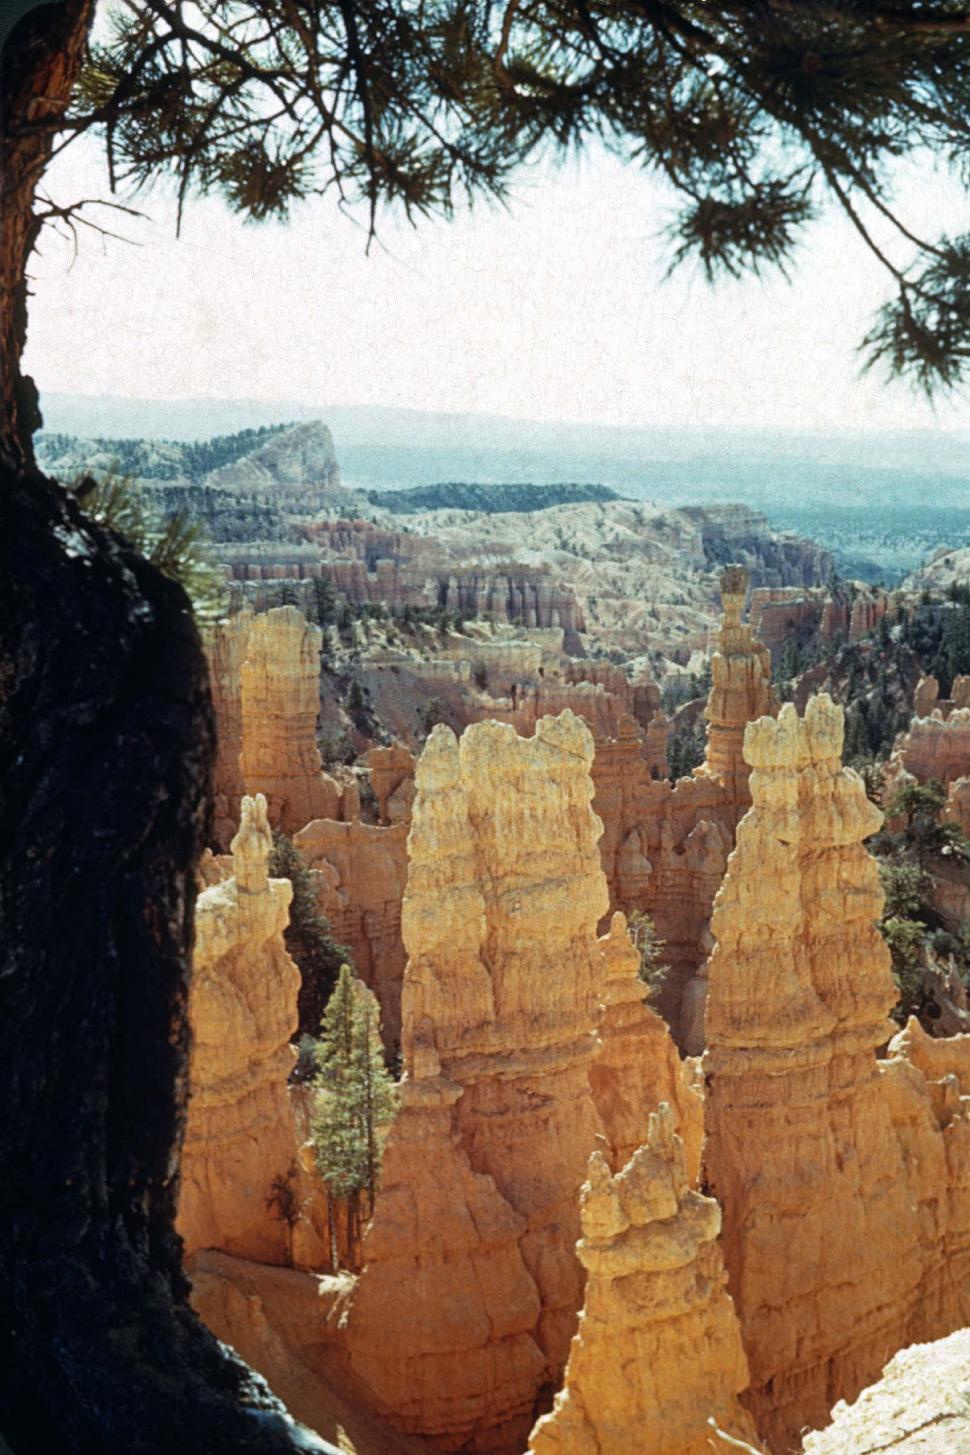 Free Image of Massive Rock Formation in Desert Landscape 